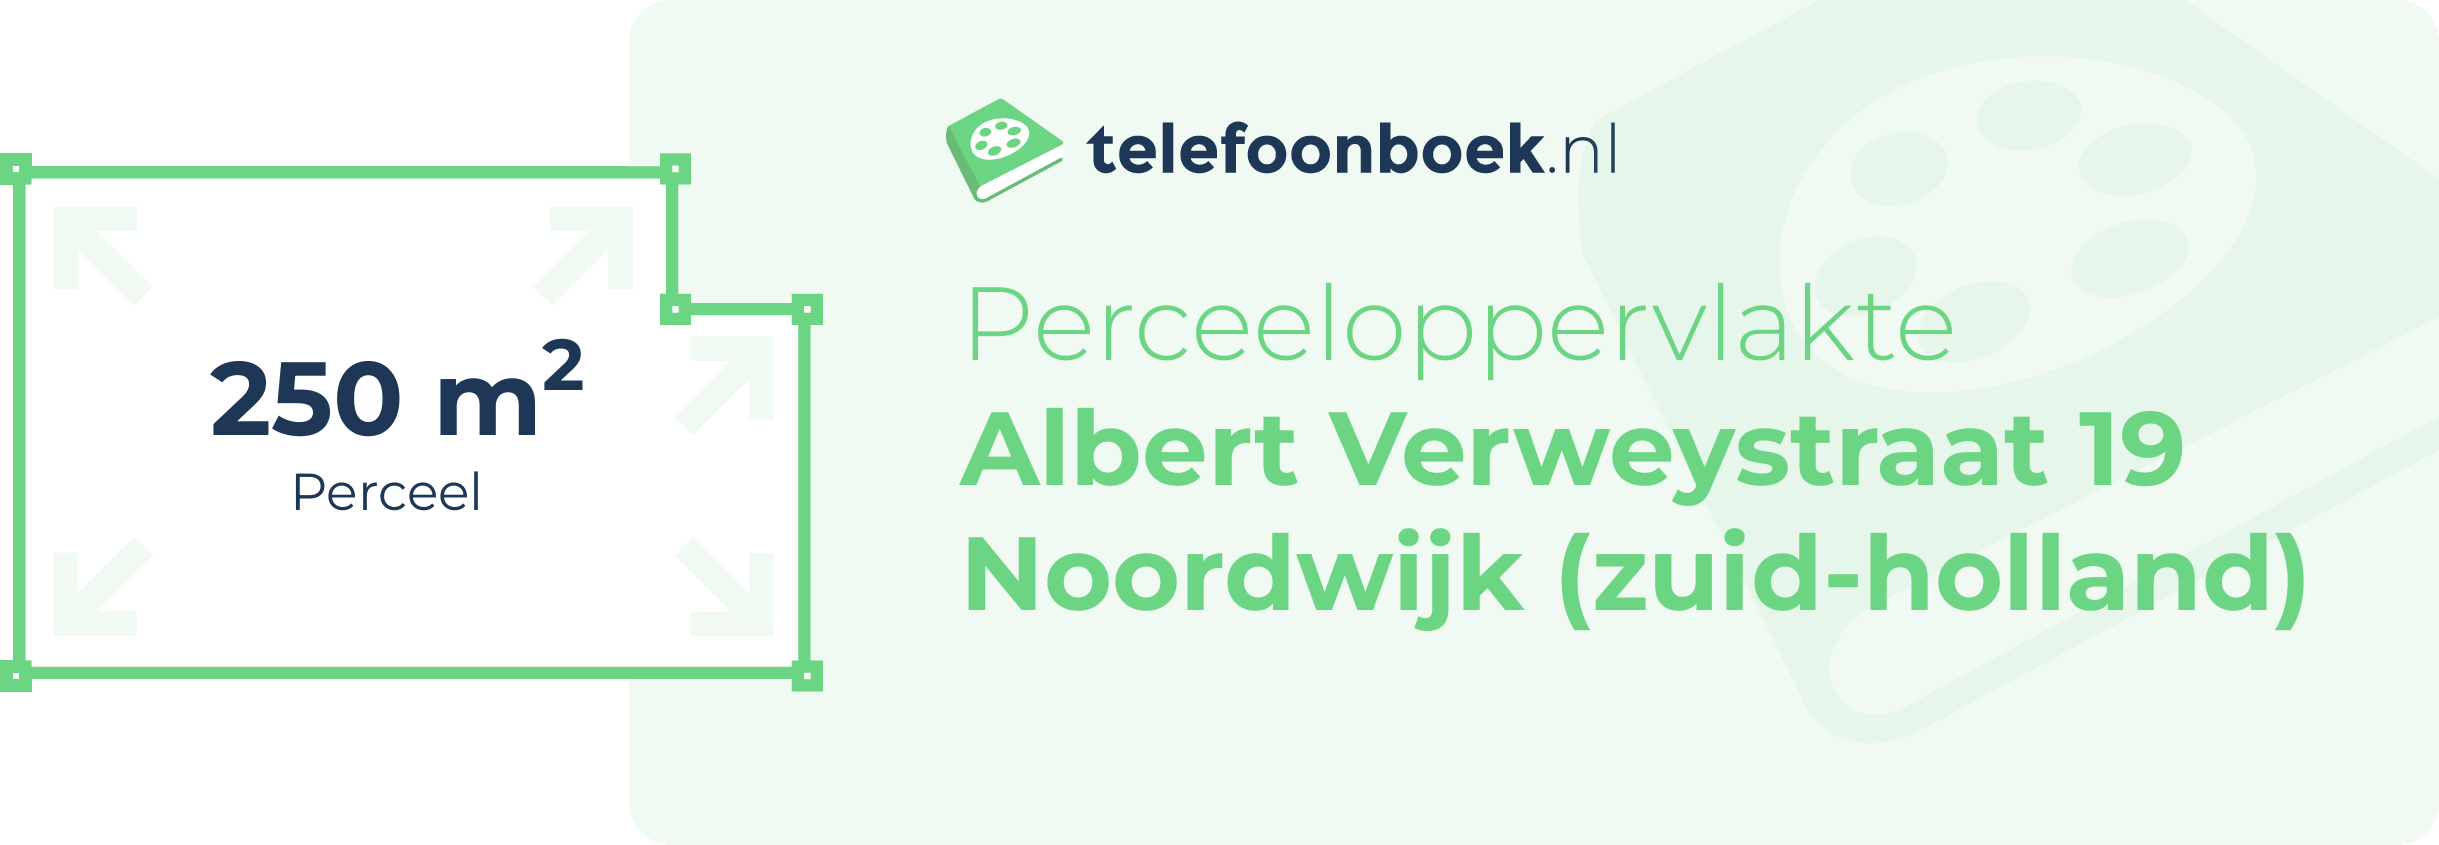 Perceeloppervlakte Albert Verweystraat 19 Noordwijk (Zuid-Holland)